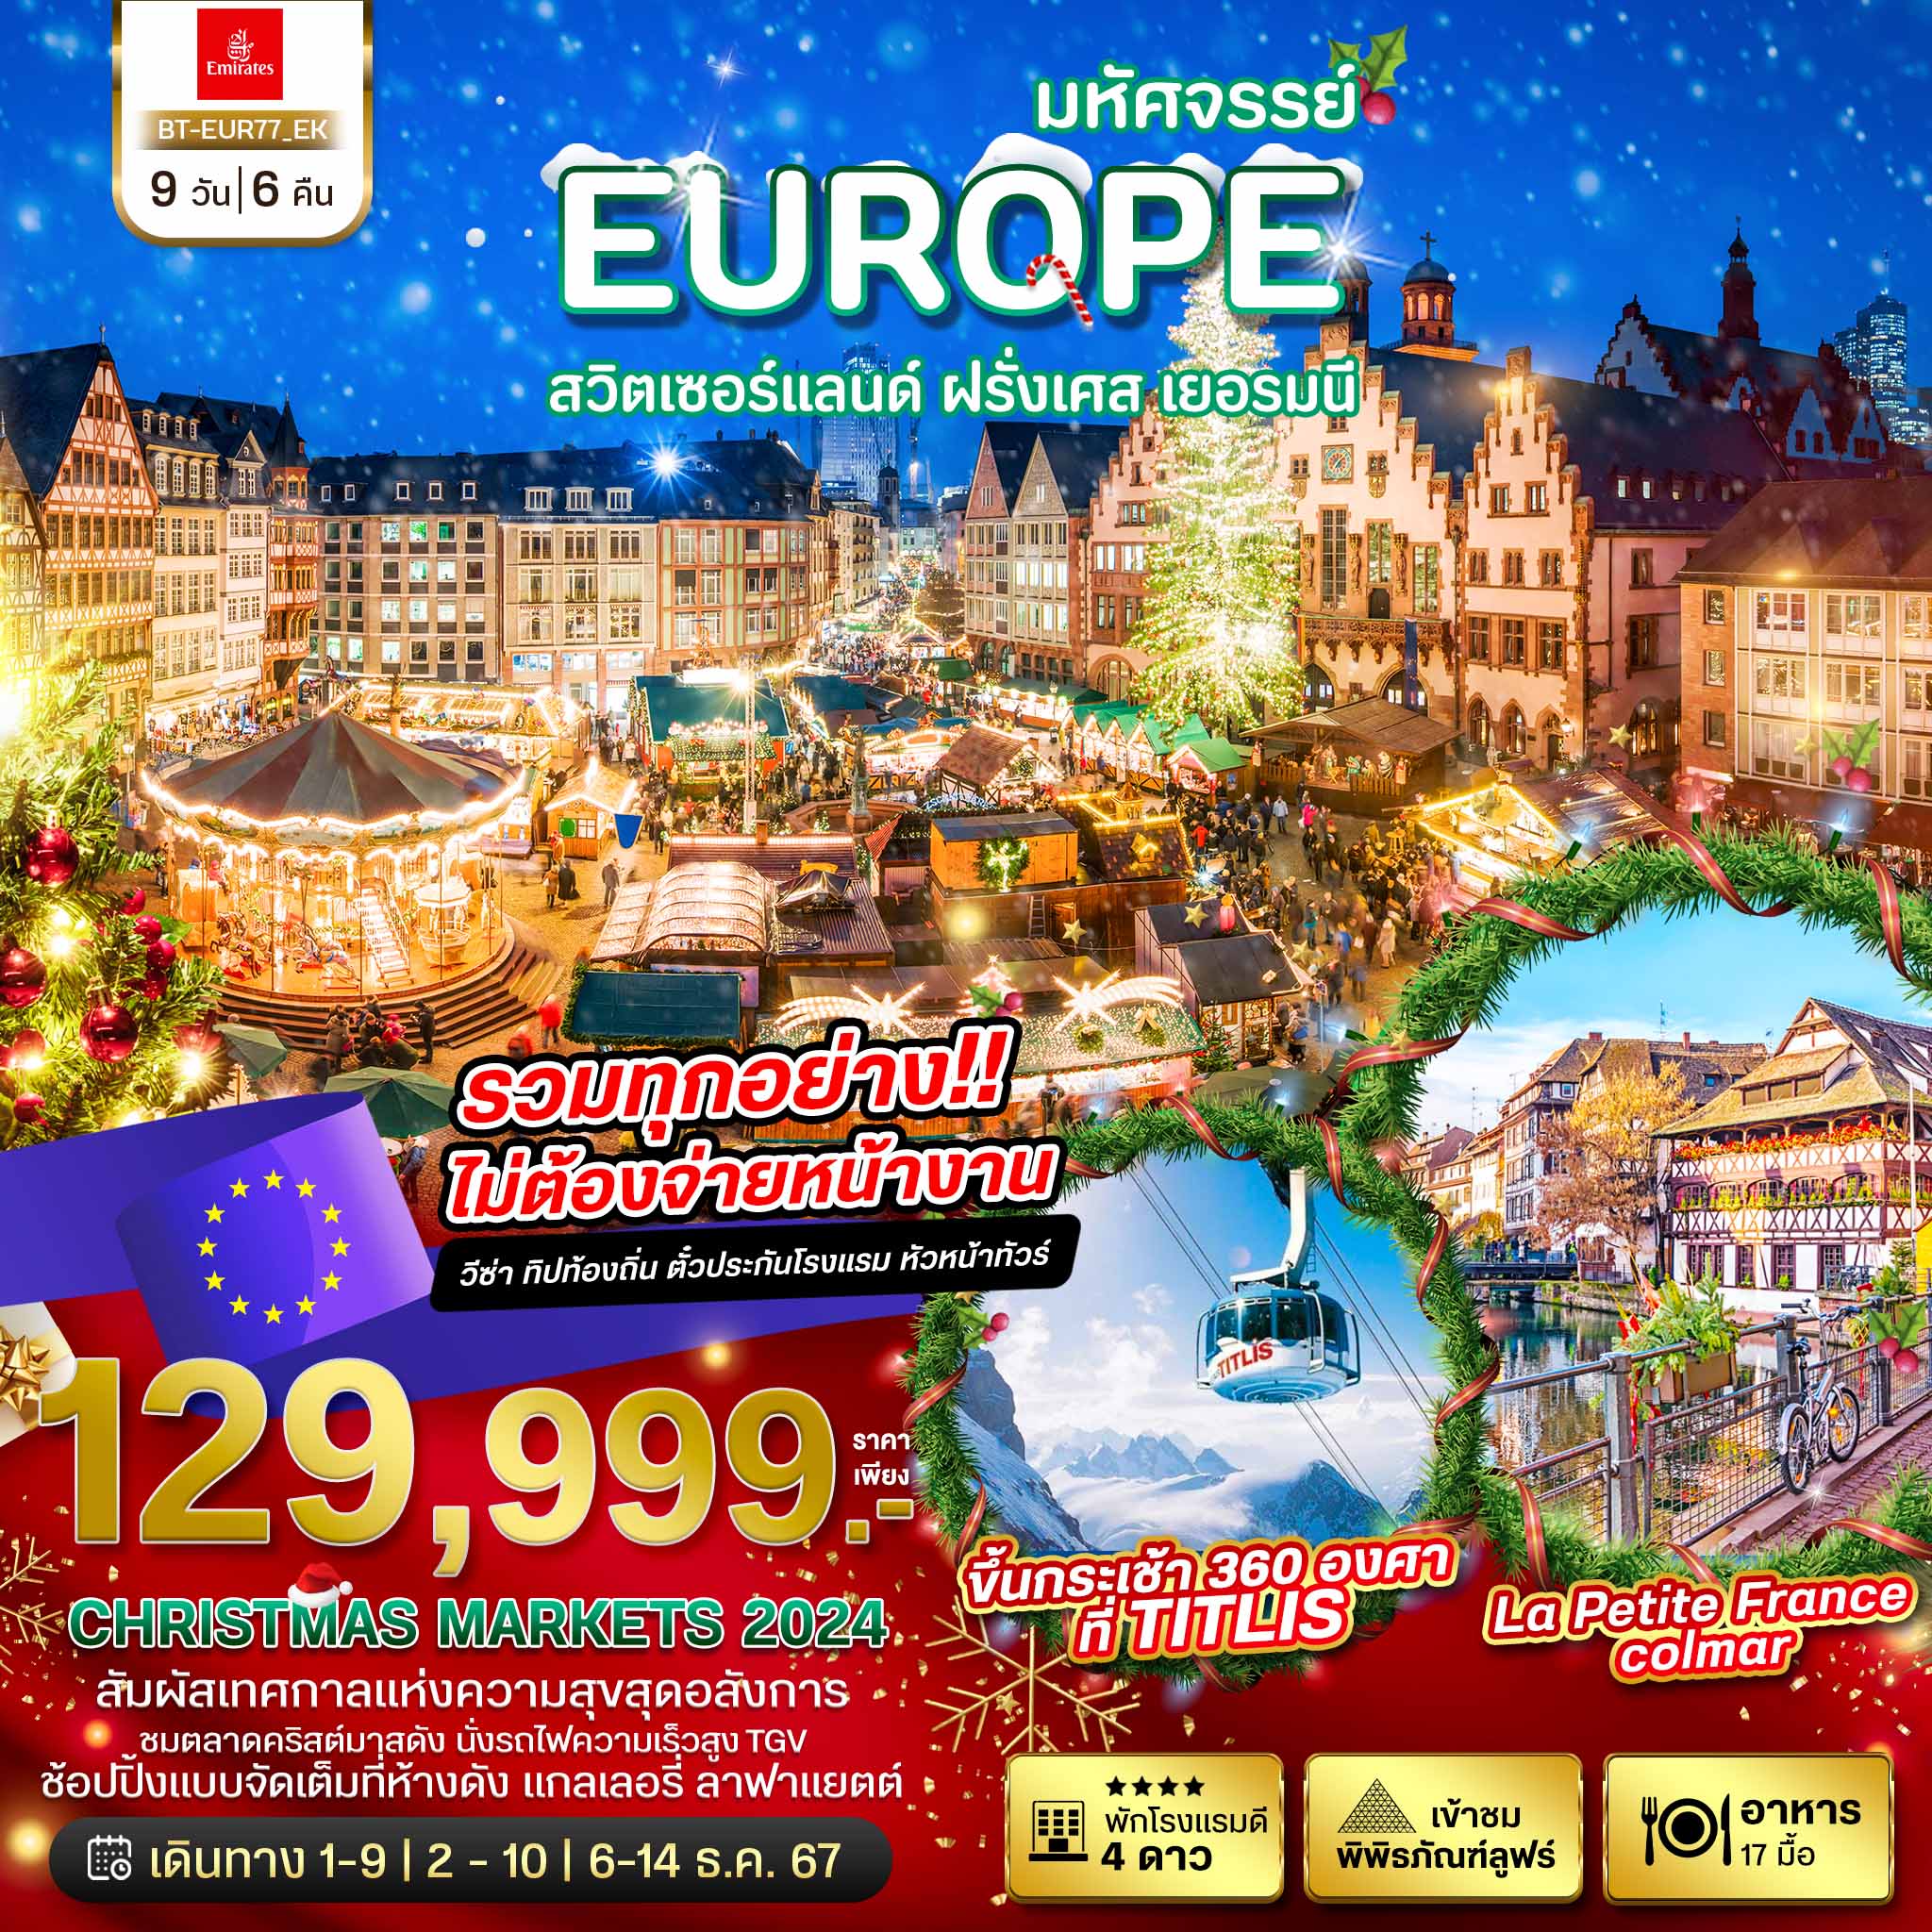 ทัวร์สวิตเซอร์แลนด์ มหัศจรรย์ สวิต เยอรมนี ฝรั่งเศส CHRISTMAS MARKETS 2024 9วัน 6คืน (EK)